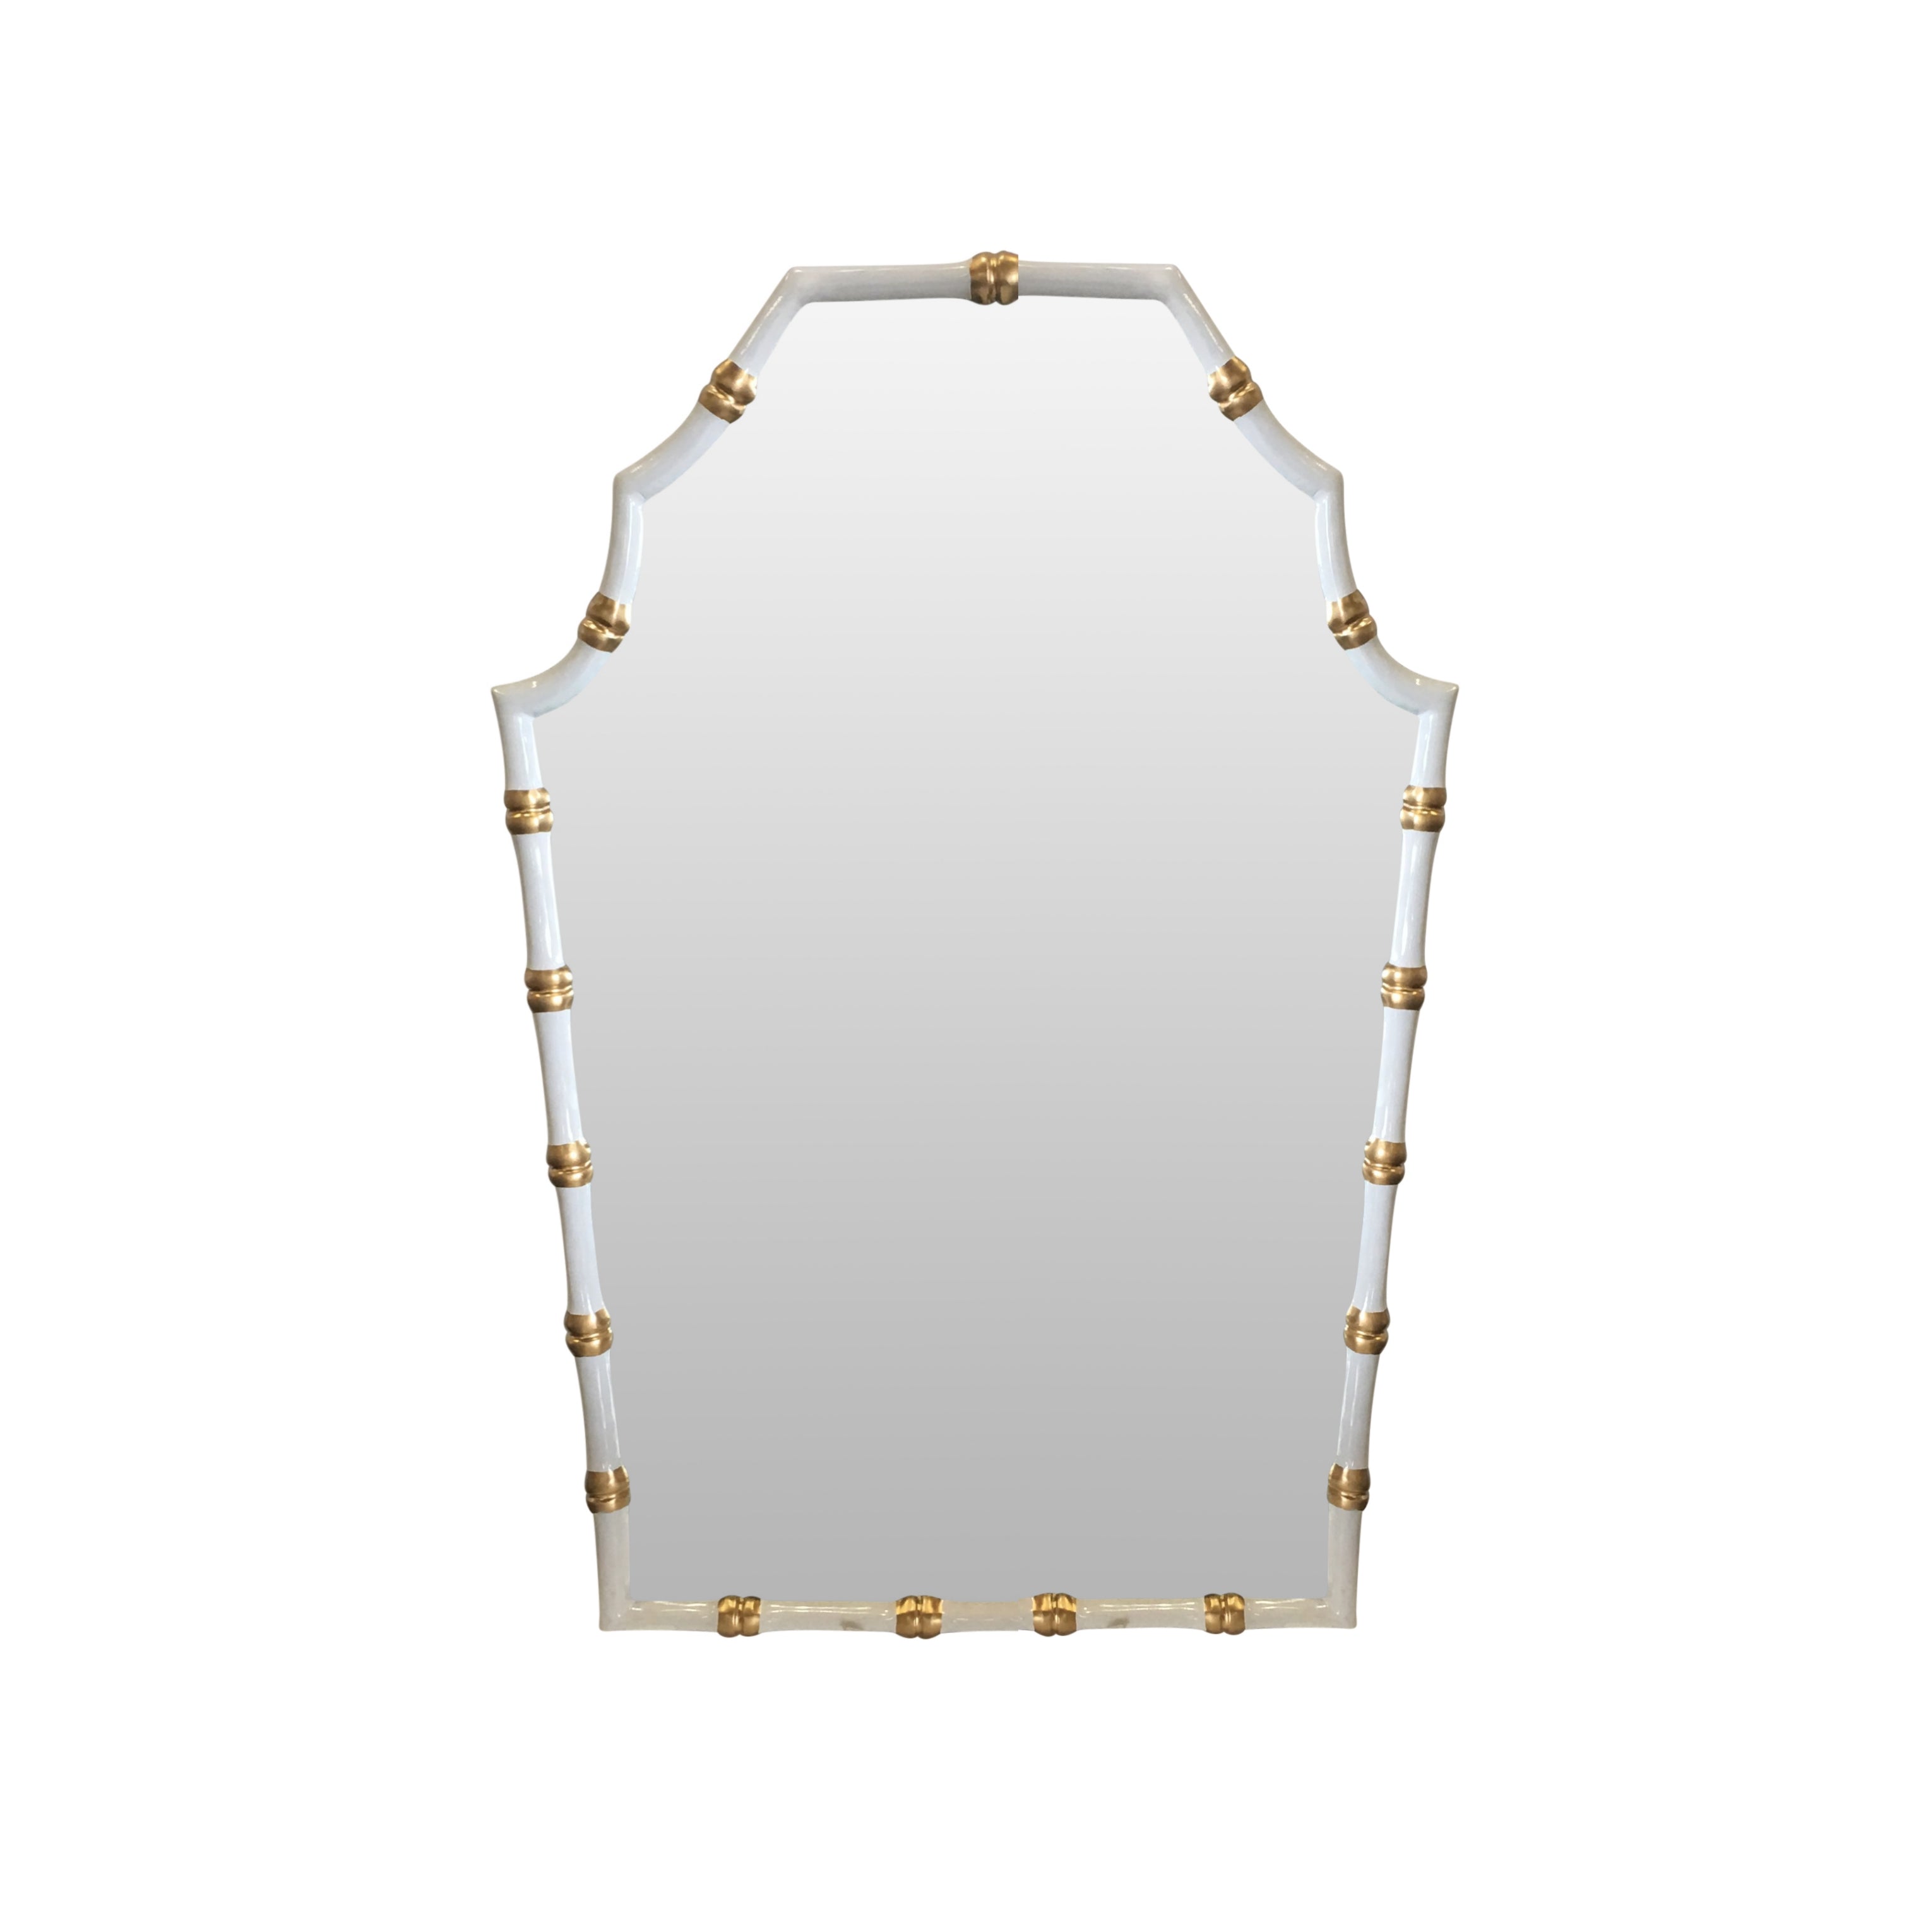 Dana Gibson Bamboo Mirror in White 2ndQ